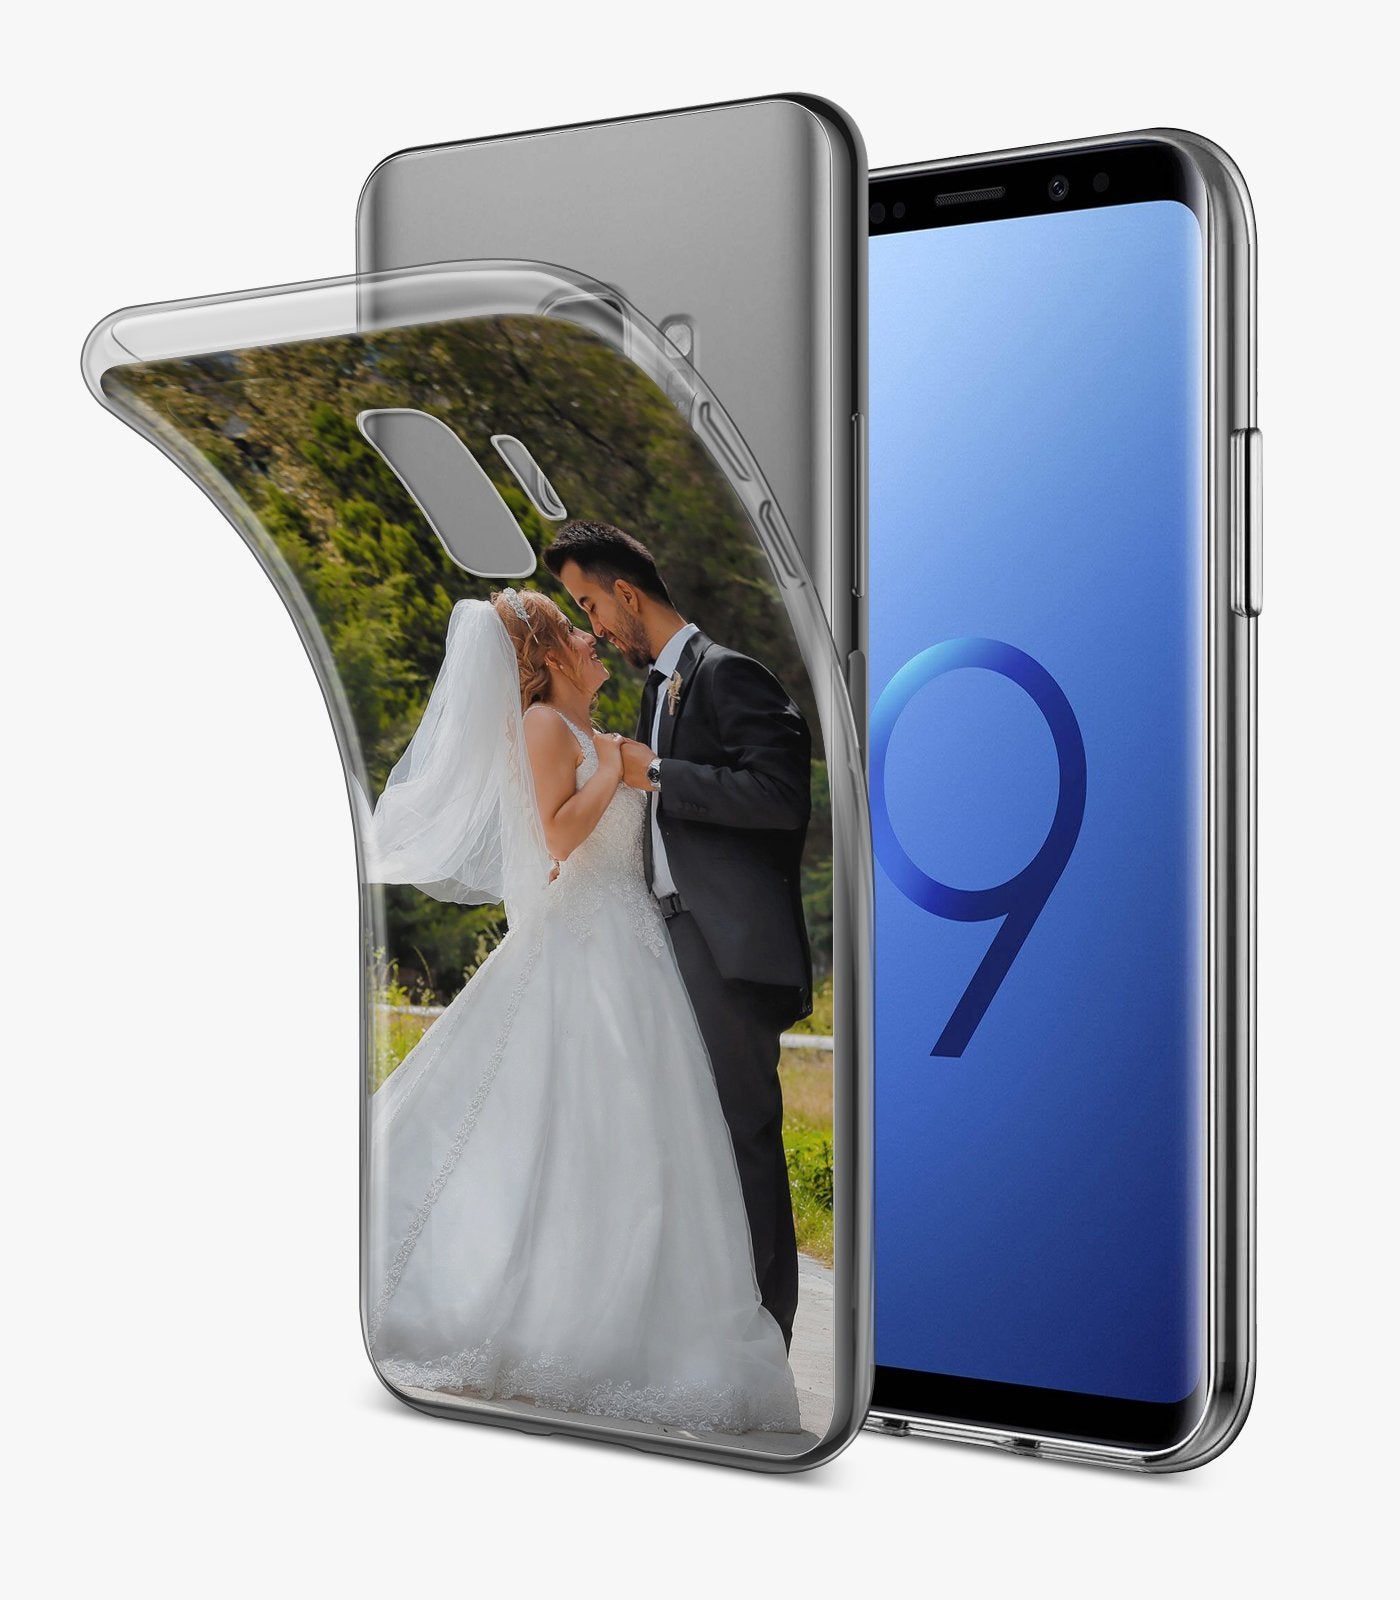 Samsung Galaxy S9 Hülle personalisiert